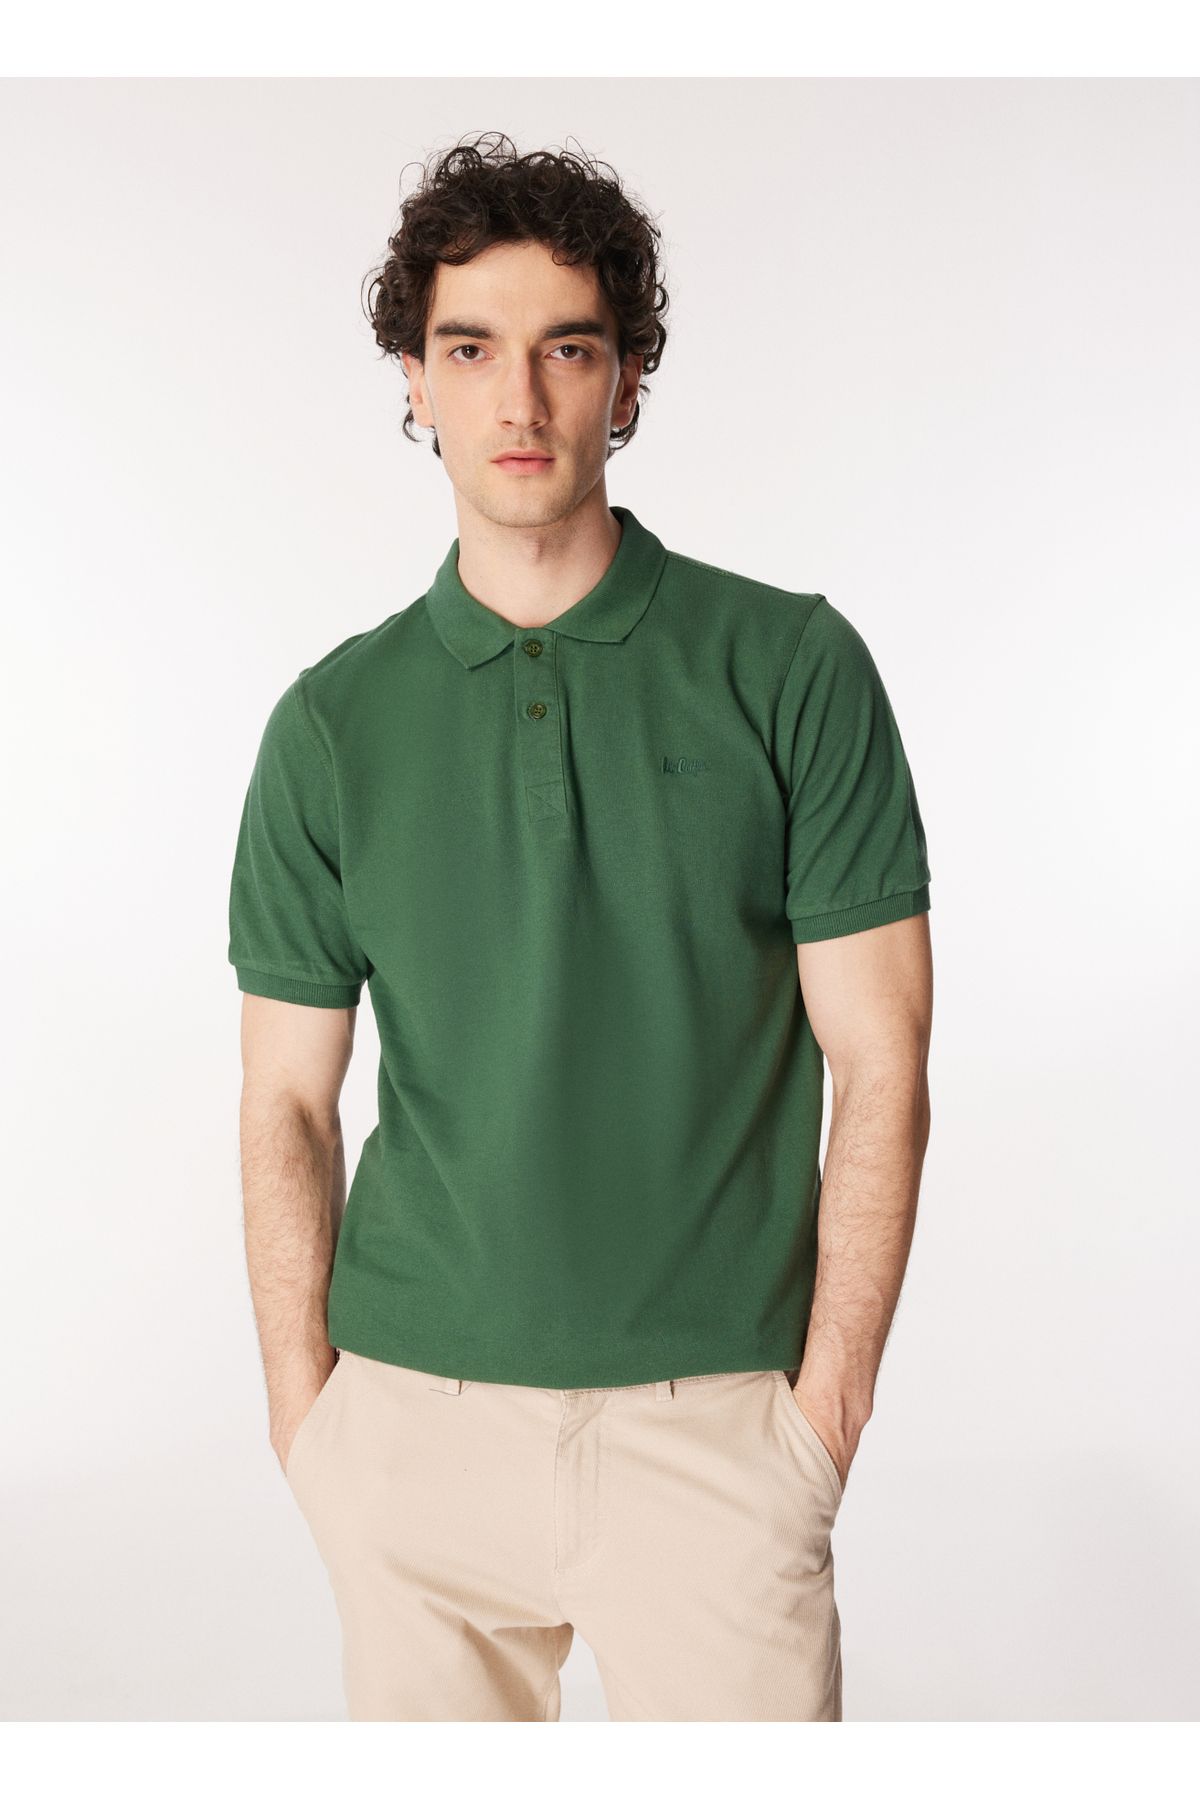 Lee Cooper Yeşil Erkek Polo T-shirt 242 Lcm 242025 Twıns K. Yeşil